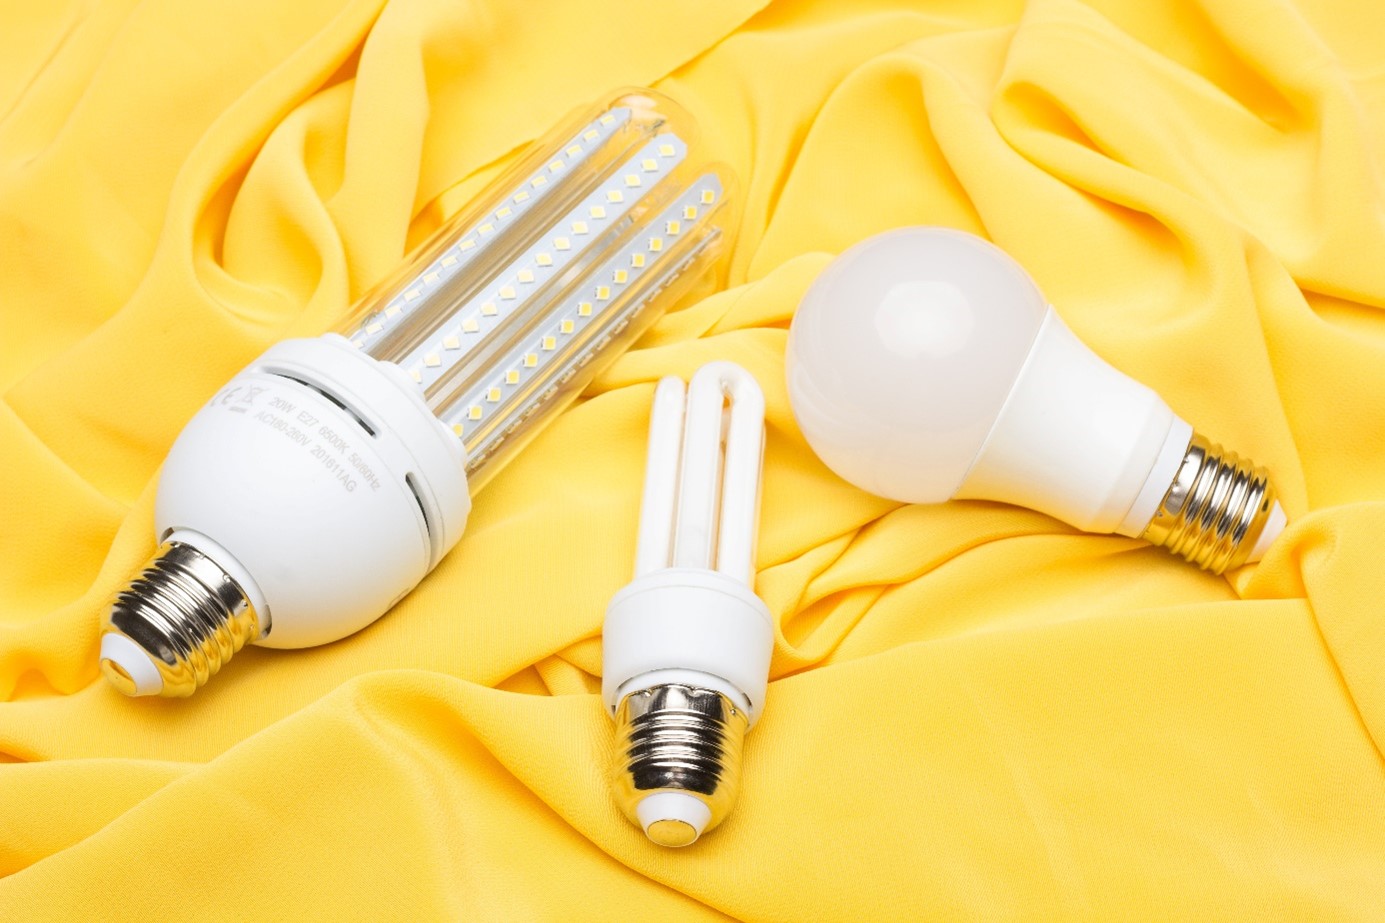 Lampen-EPR – Verschiedene energieeffiziente Lampen